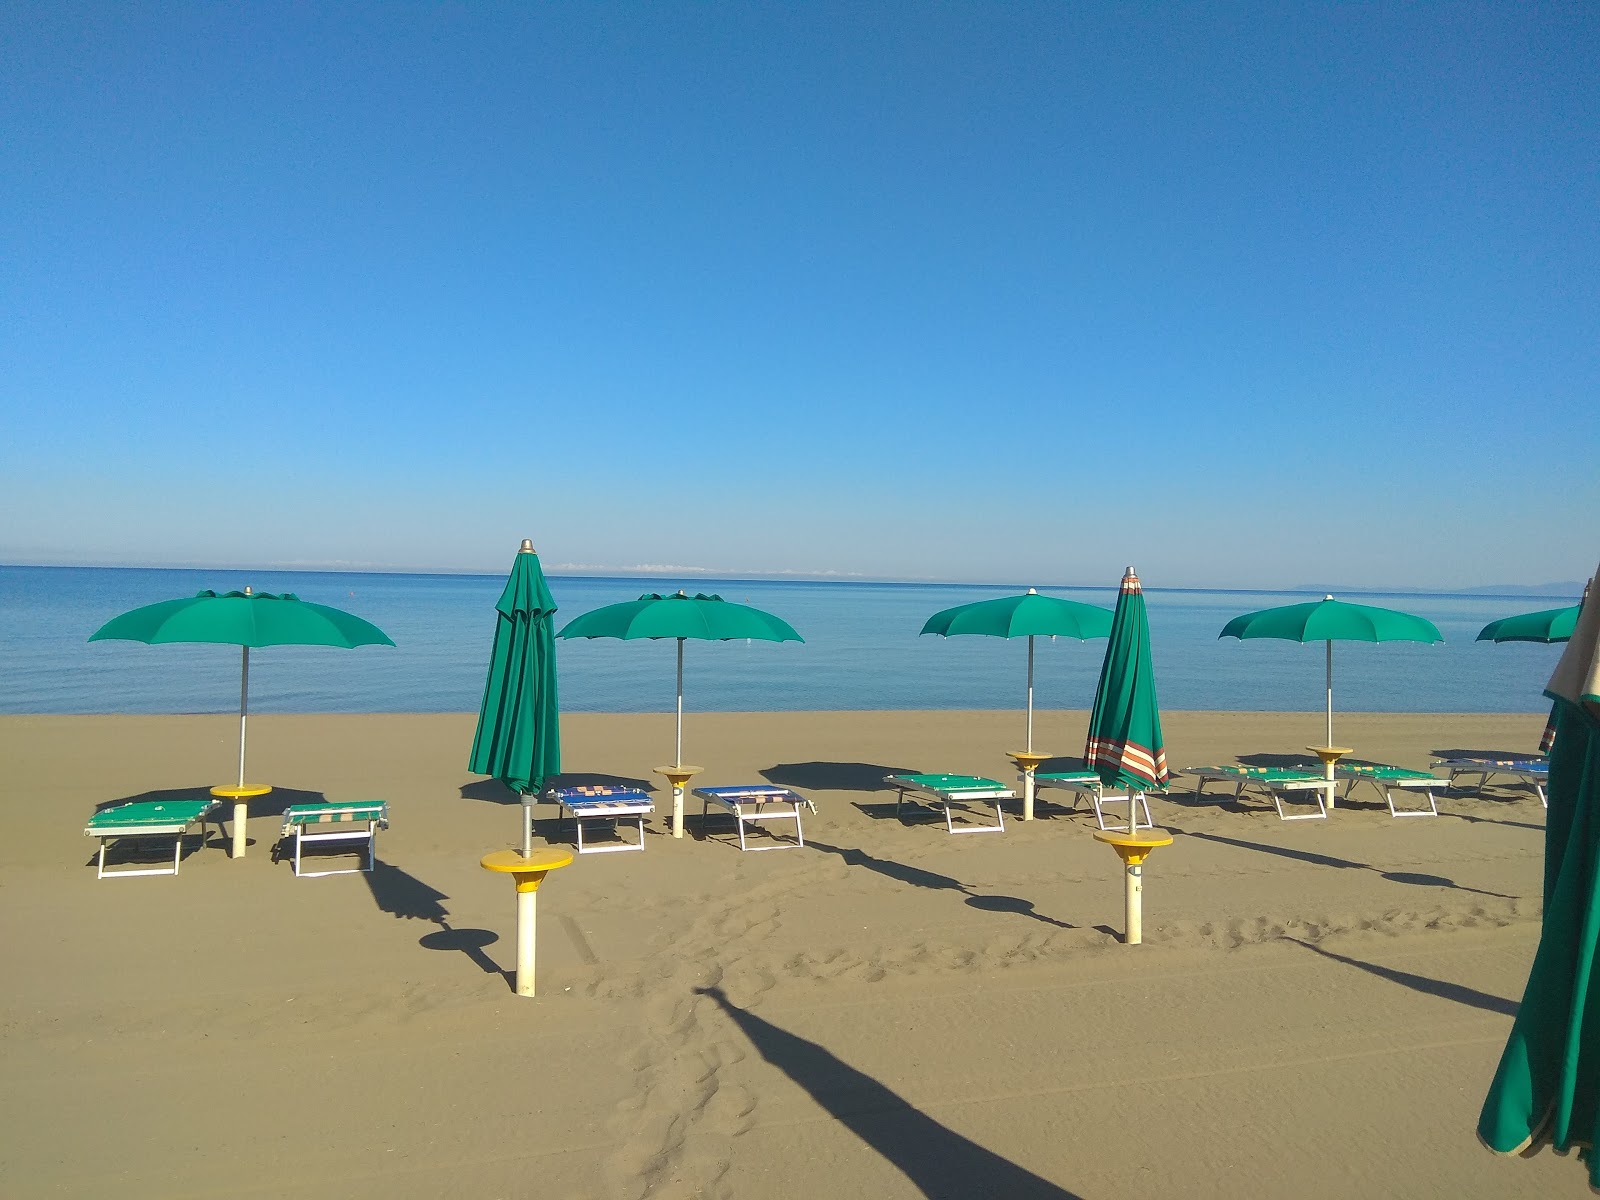 Foto de Spiaggia Florenzo - lugar popular entre los conocedores del relax